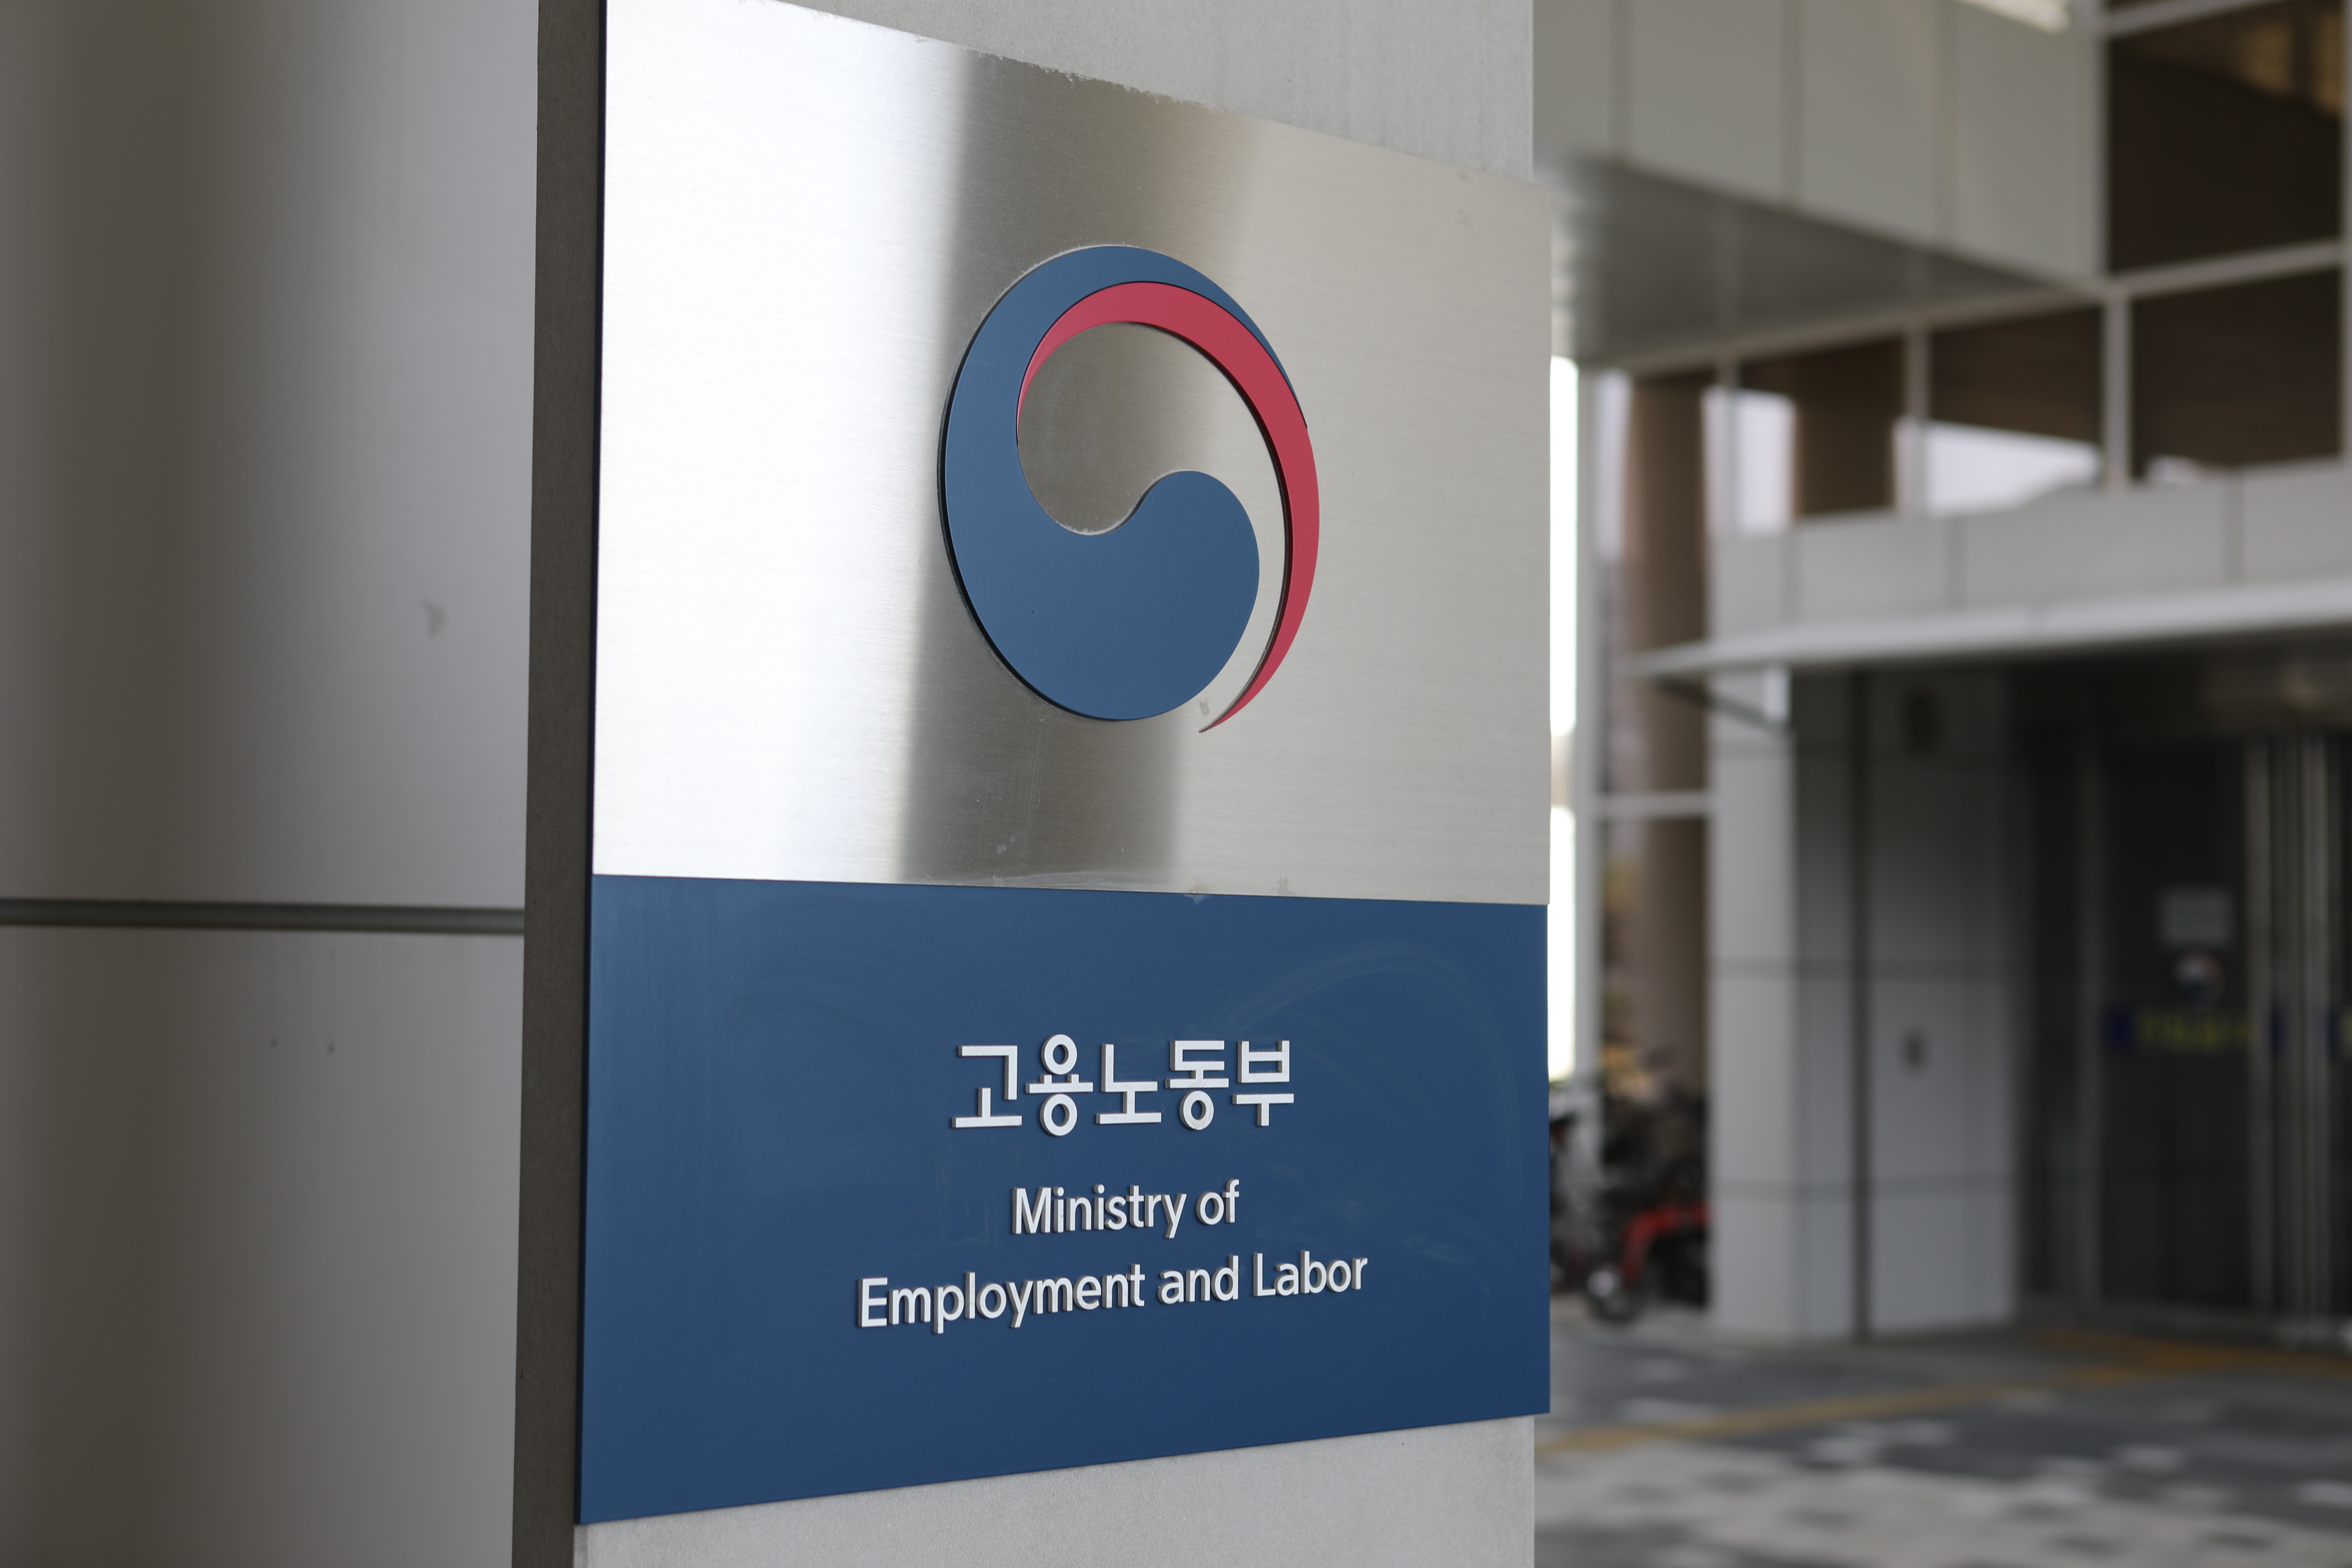 고용노동부는 26일 부당노동행위 논란이 일고 있는 MBC에 대해 열흘간 특별근로감독을 실시한다고 밝혔다.<br>